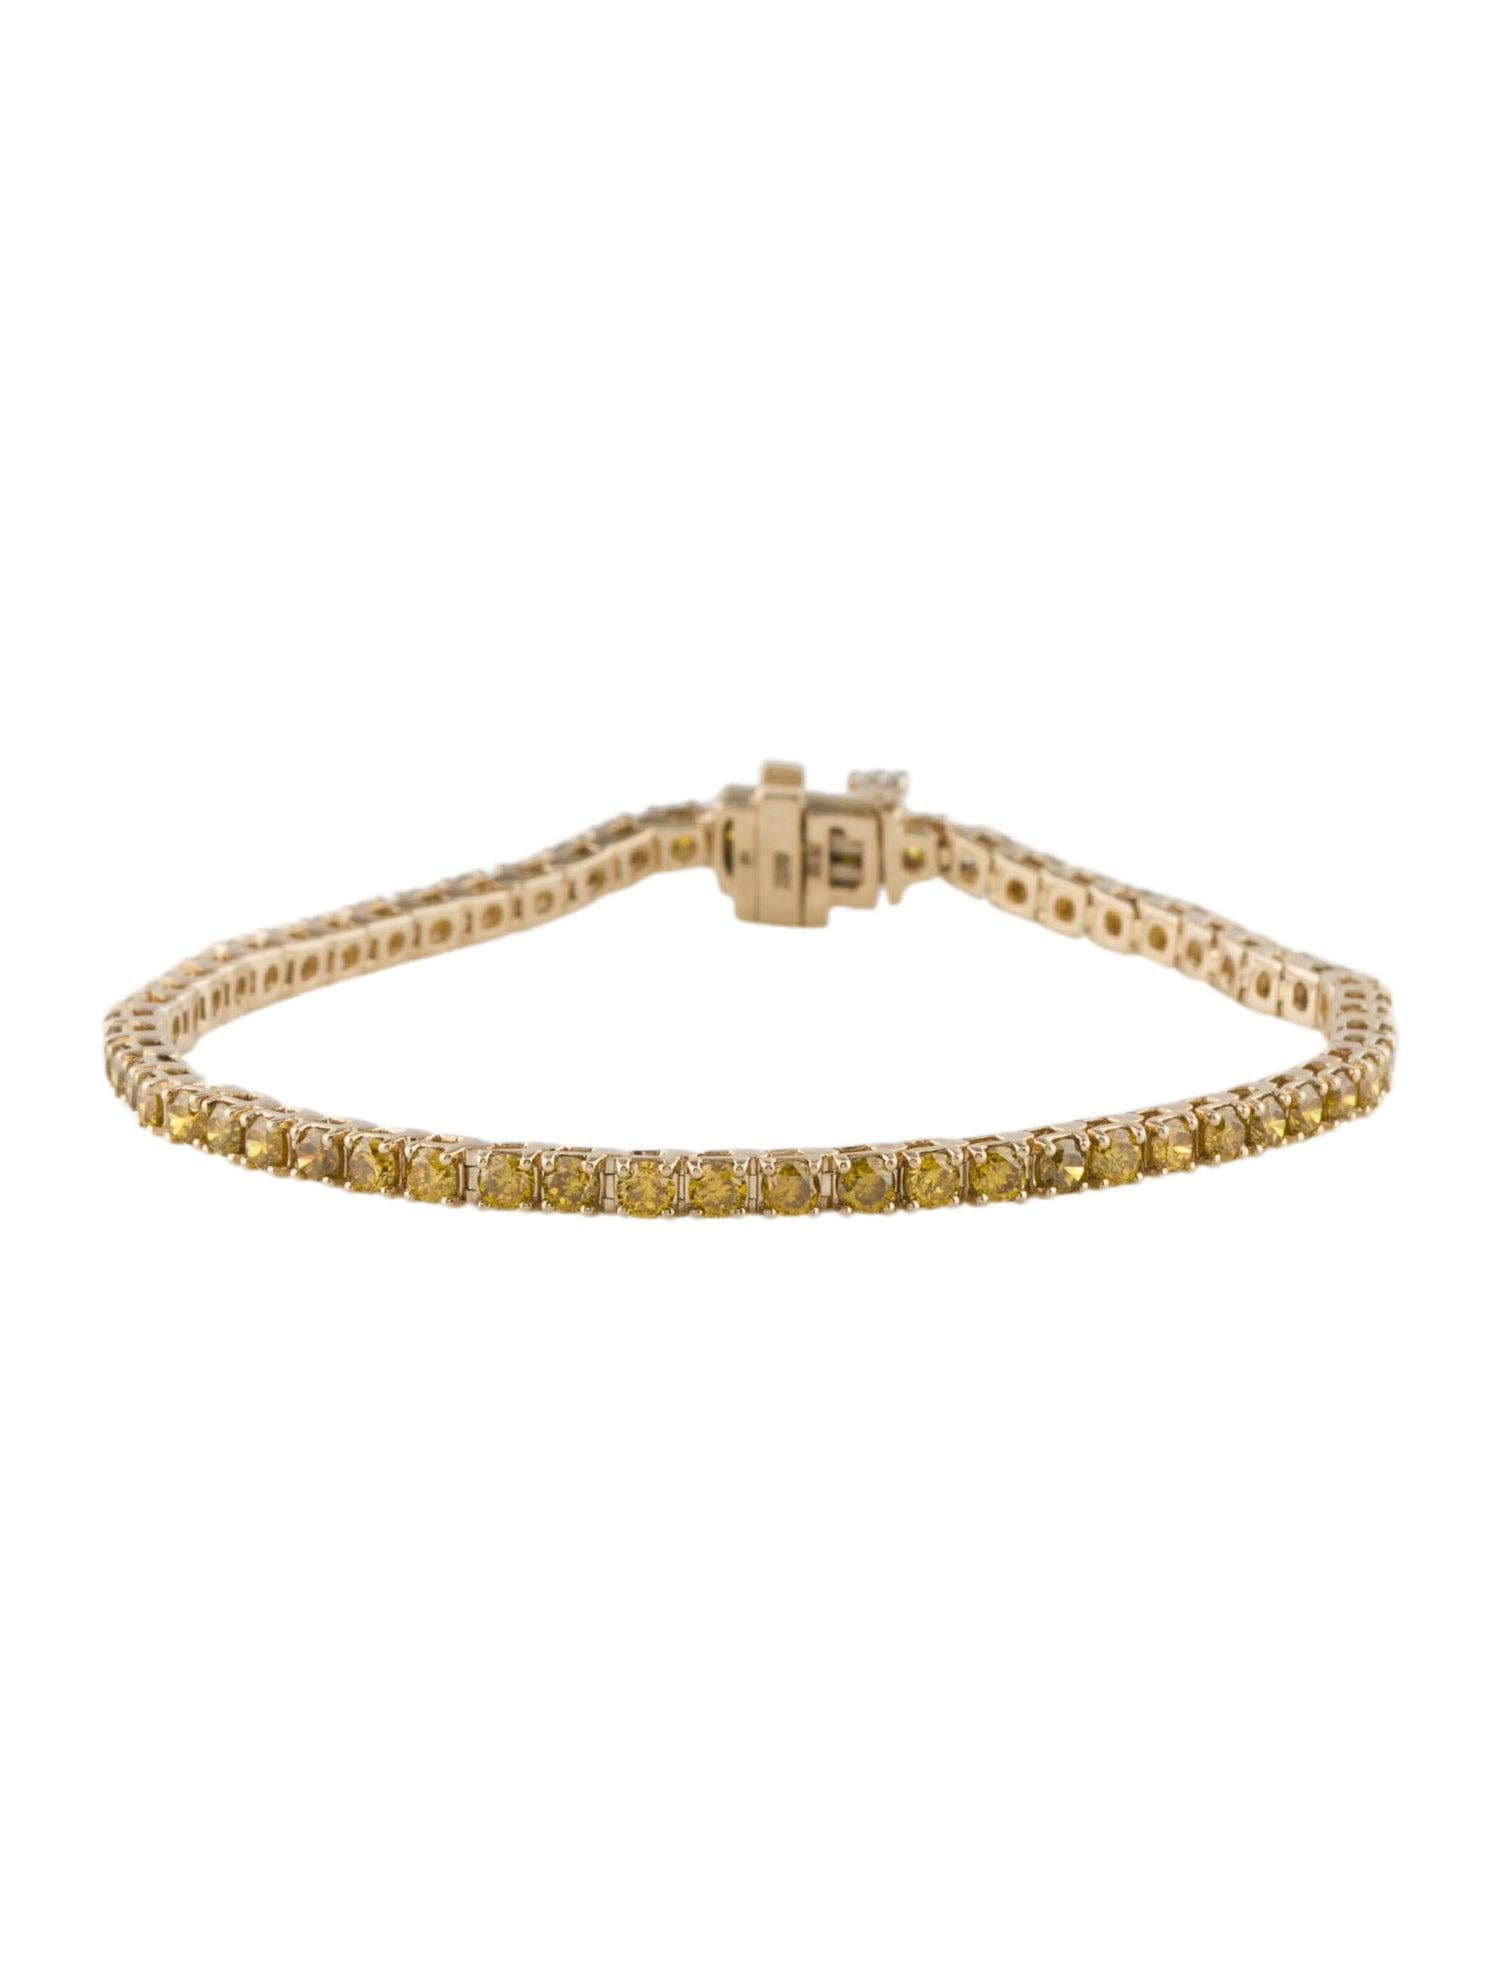 Élevez votre poignet avec le bracelet Radiant Sunshine Yellow Diamond de la collection exquise de Jeweltique. Méticuleusement fabriqué à la main en Inde, ce bracelet témoigne de notre attachement à un savoir-faire exceptionnel et à la célébration de